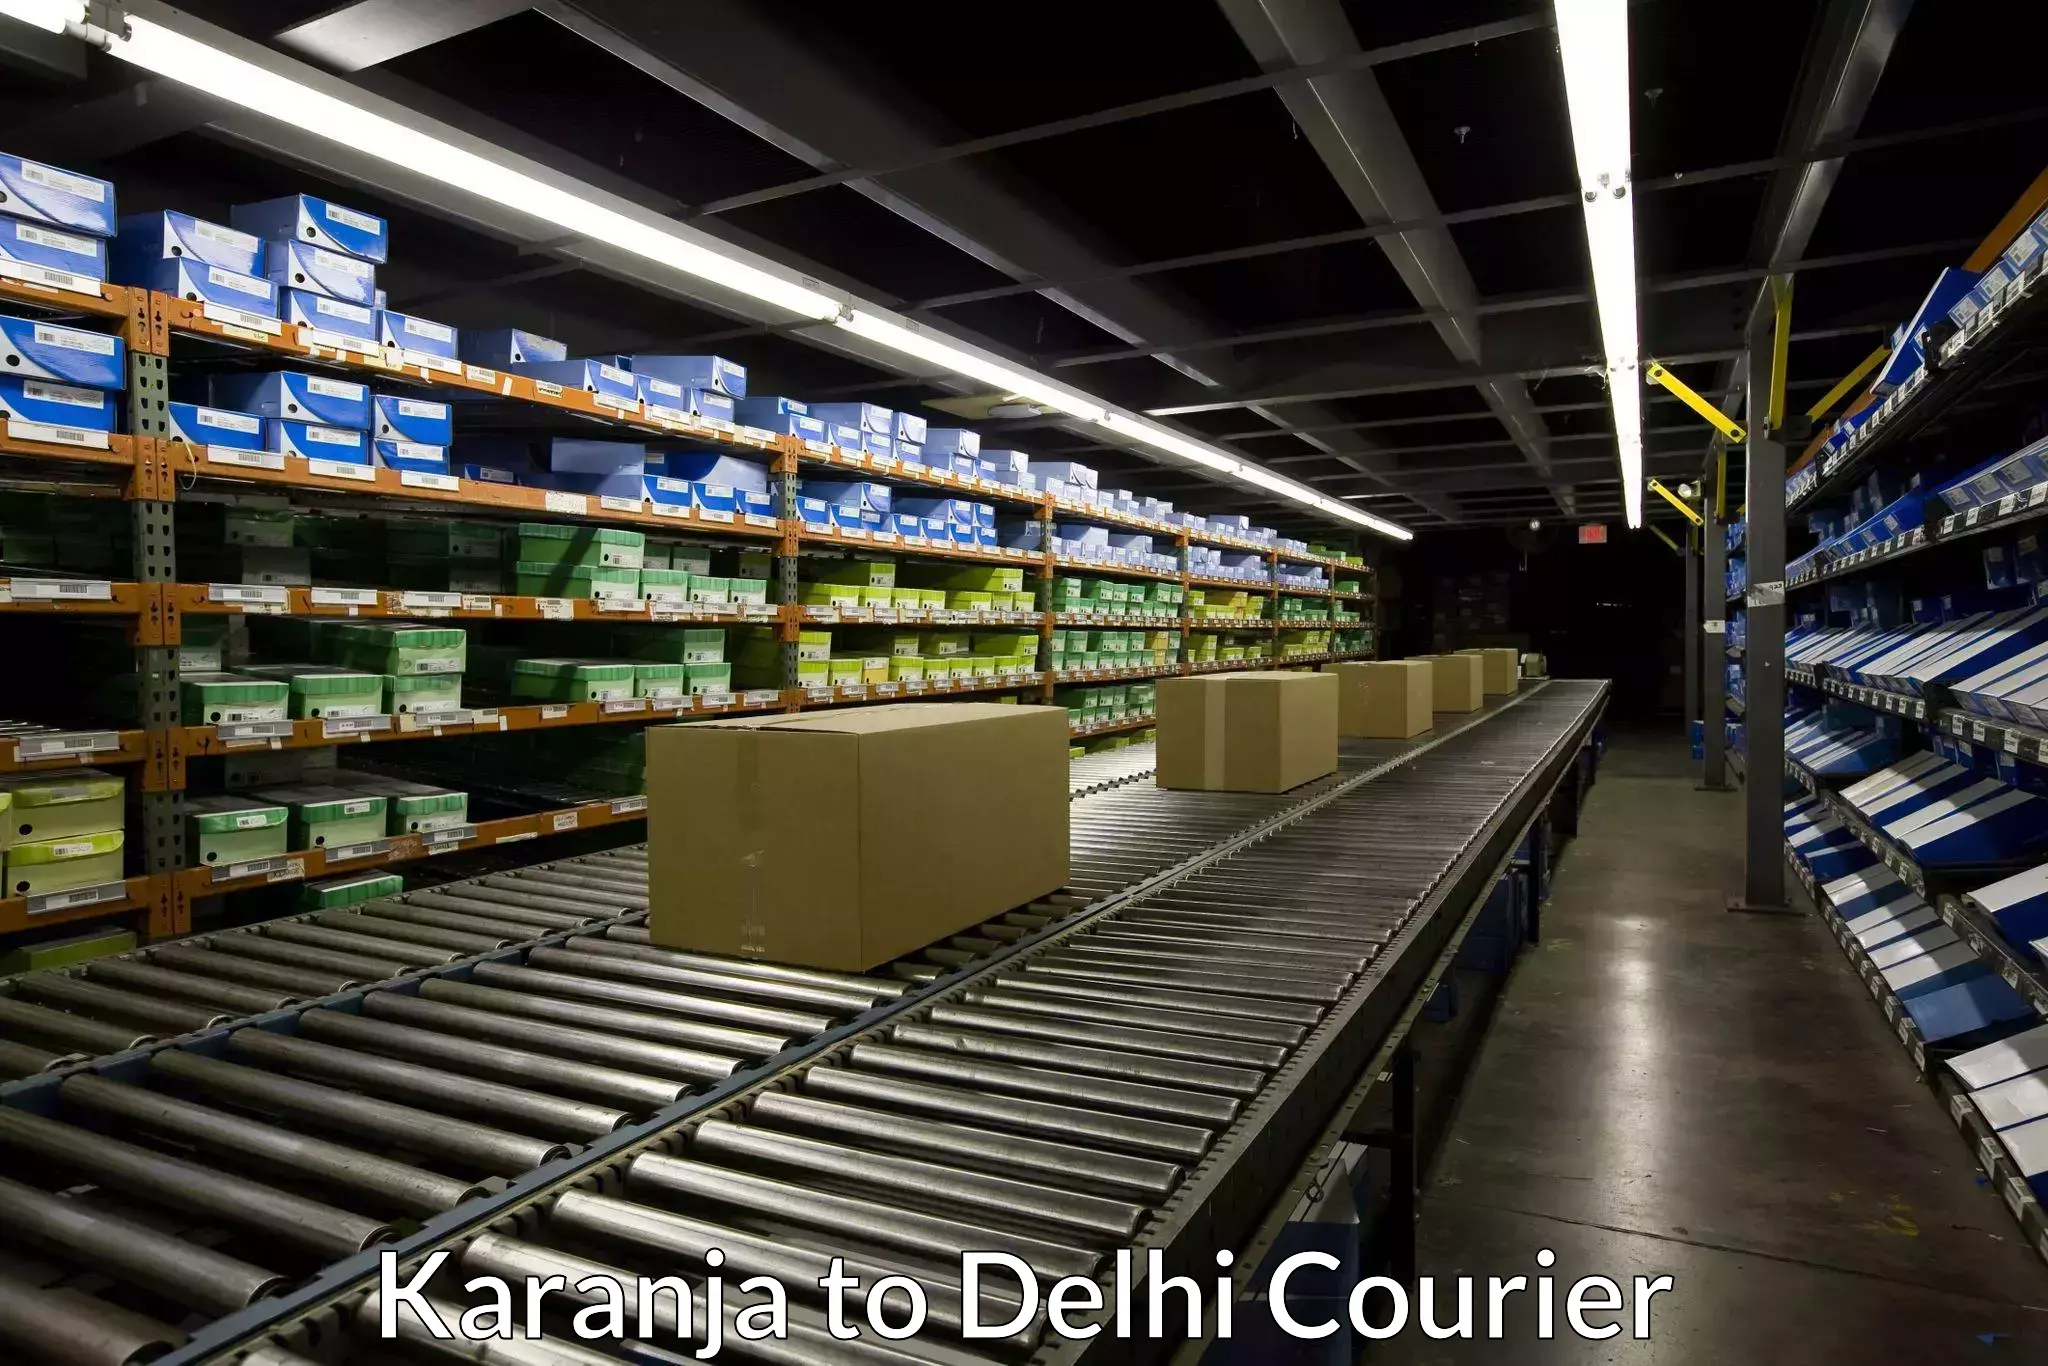 Nationwide parcel services Karanja to Delhi